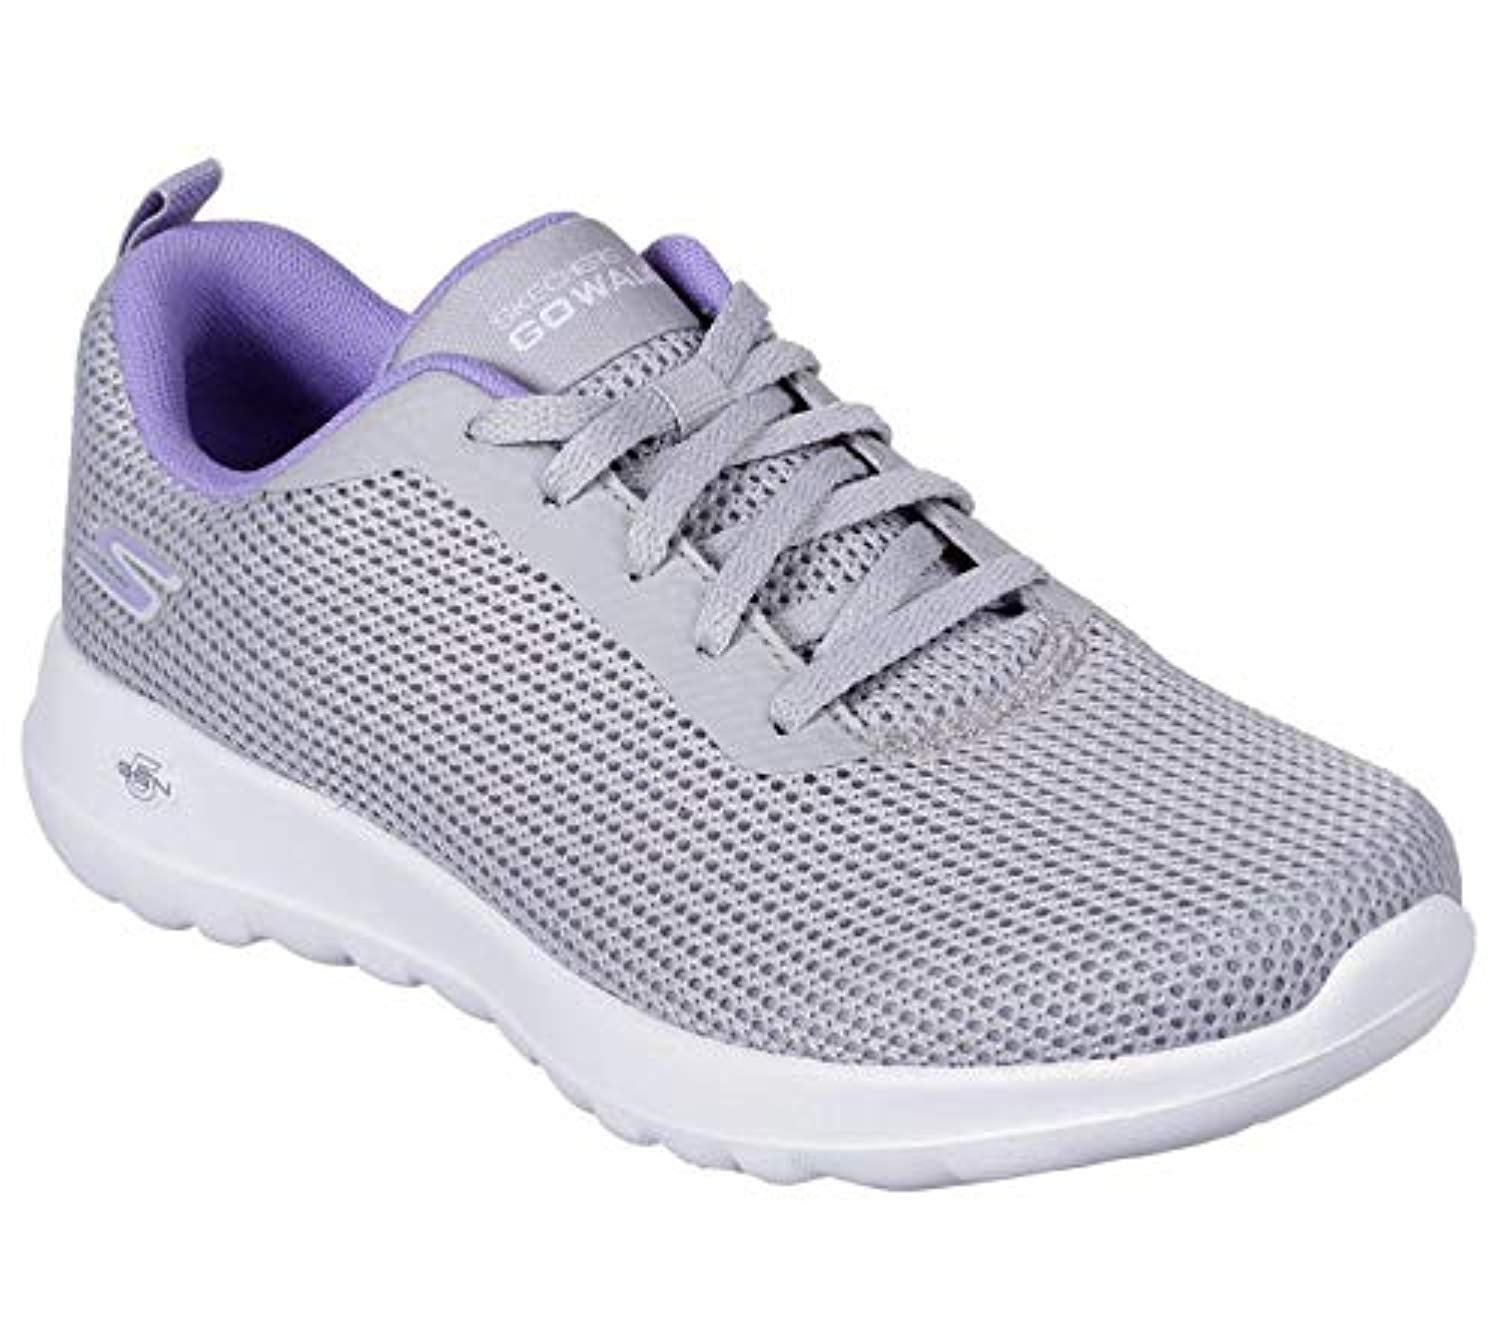 Skechers GO Walk Joy Upturn Womens Sneakers Gray/Purple 9.5 - Walmart.com